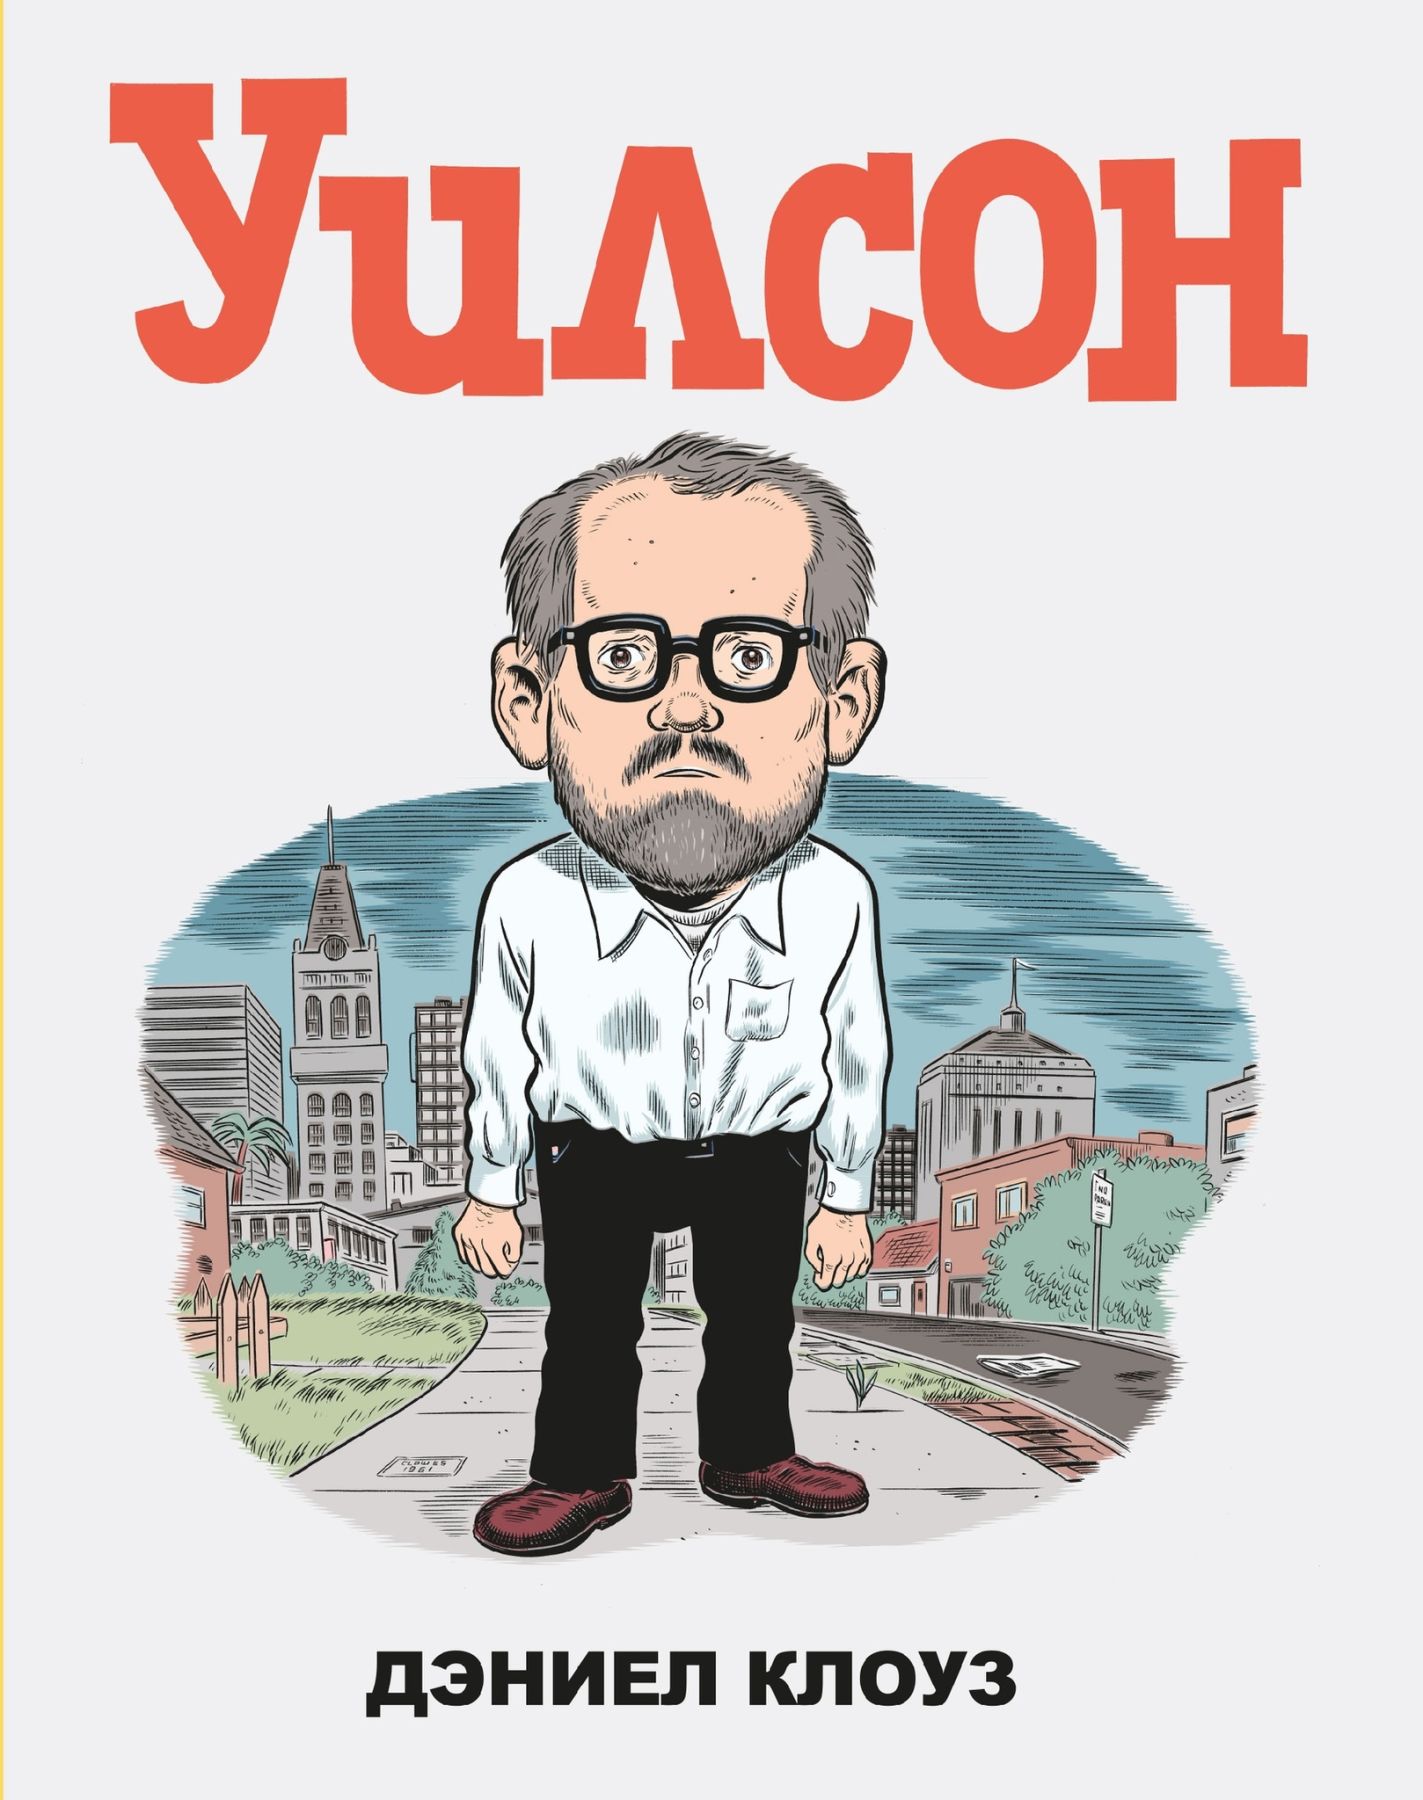 Комикс на русском языке «Уилсон»